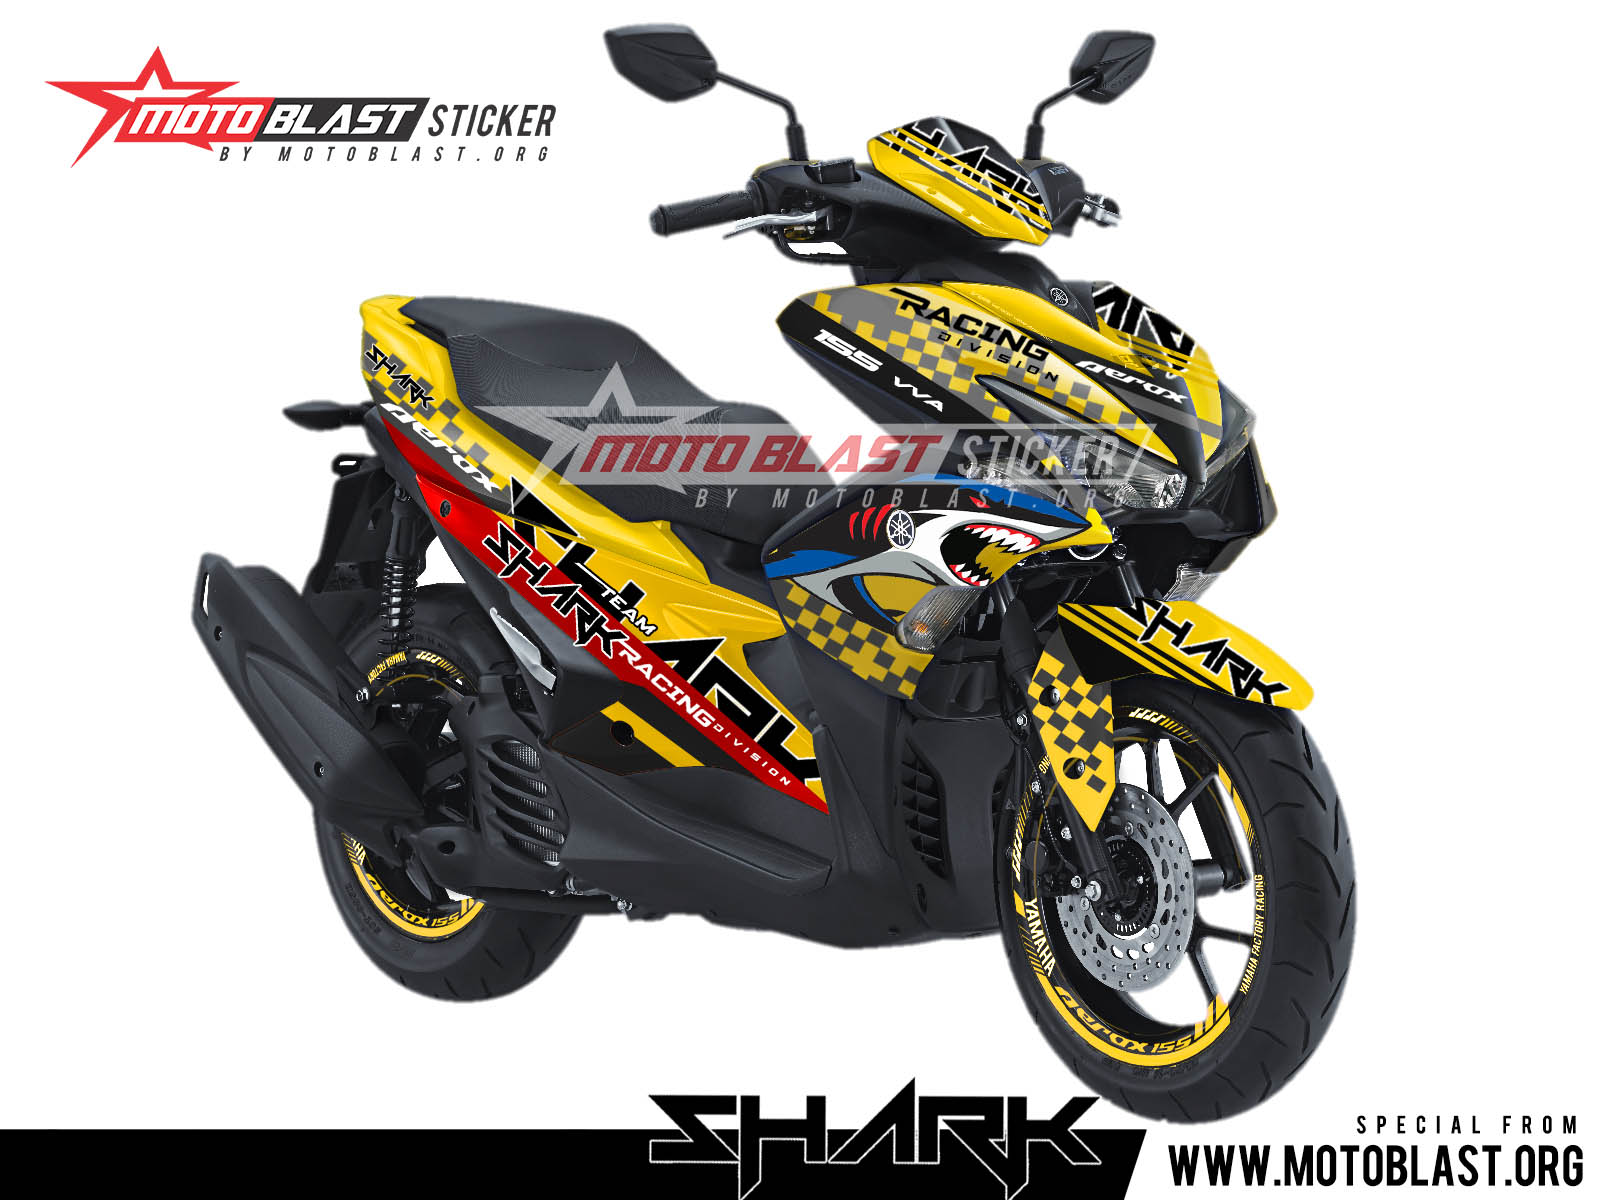 Modifikasi Aerox Warna Kuning. Modifikasi striping Yamaha Aerox 155 kuning